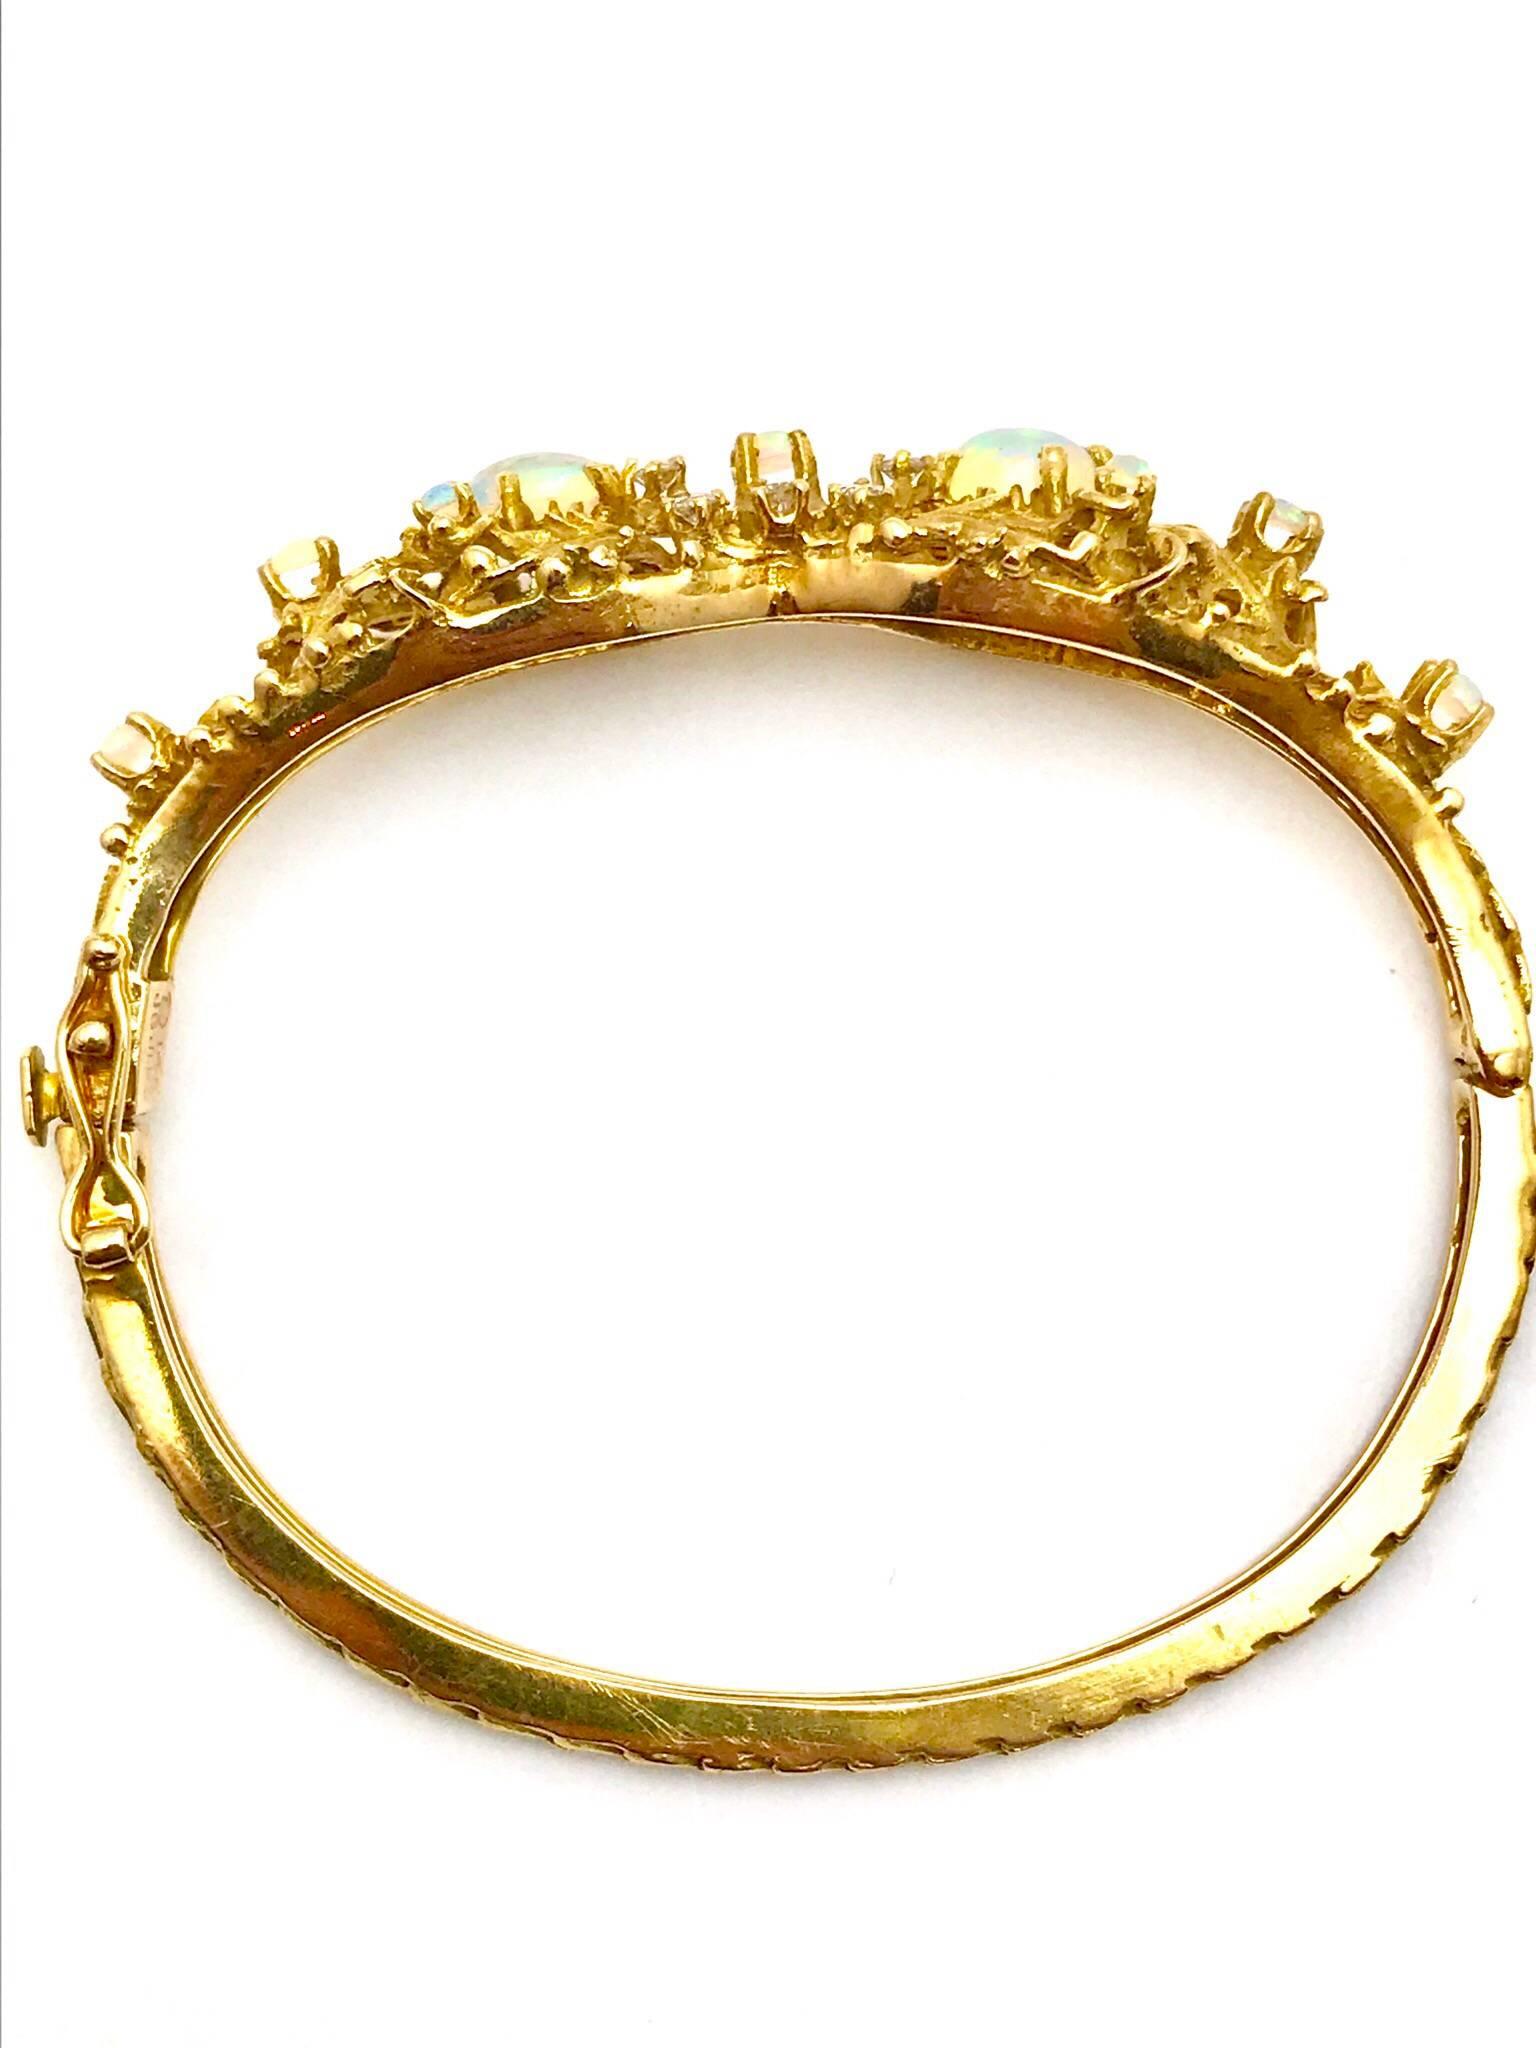 Round Cut Opal and Diamond Yellow Gold Bangle Bracelet